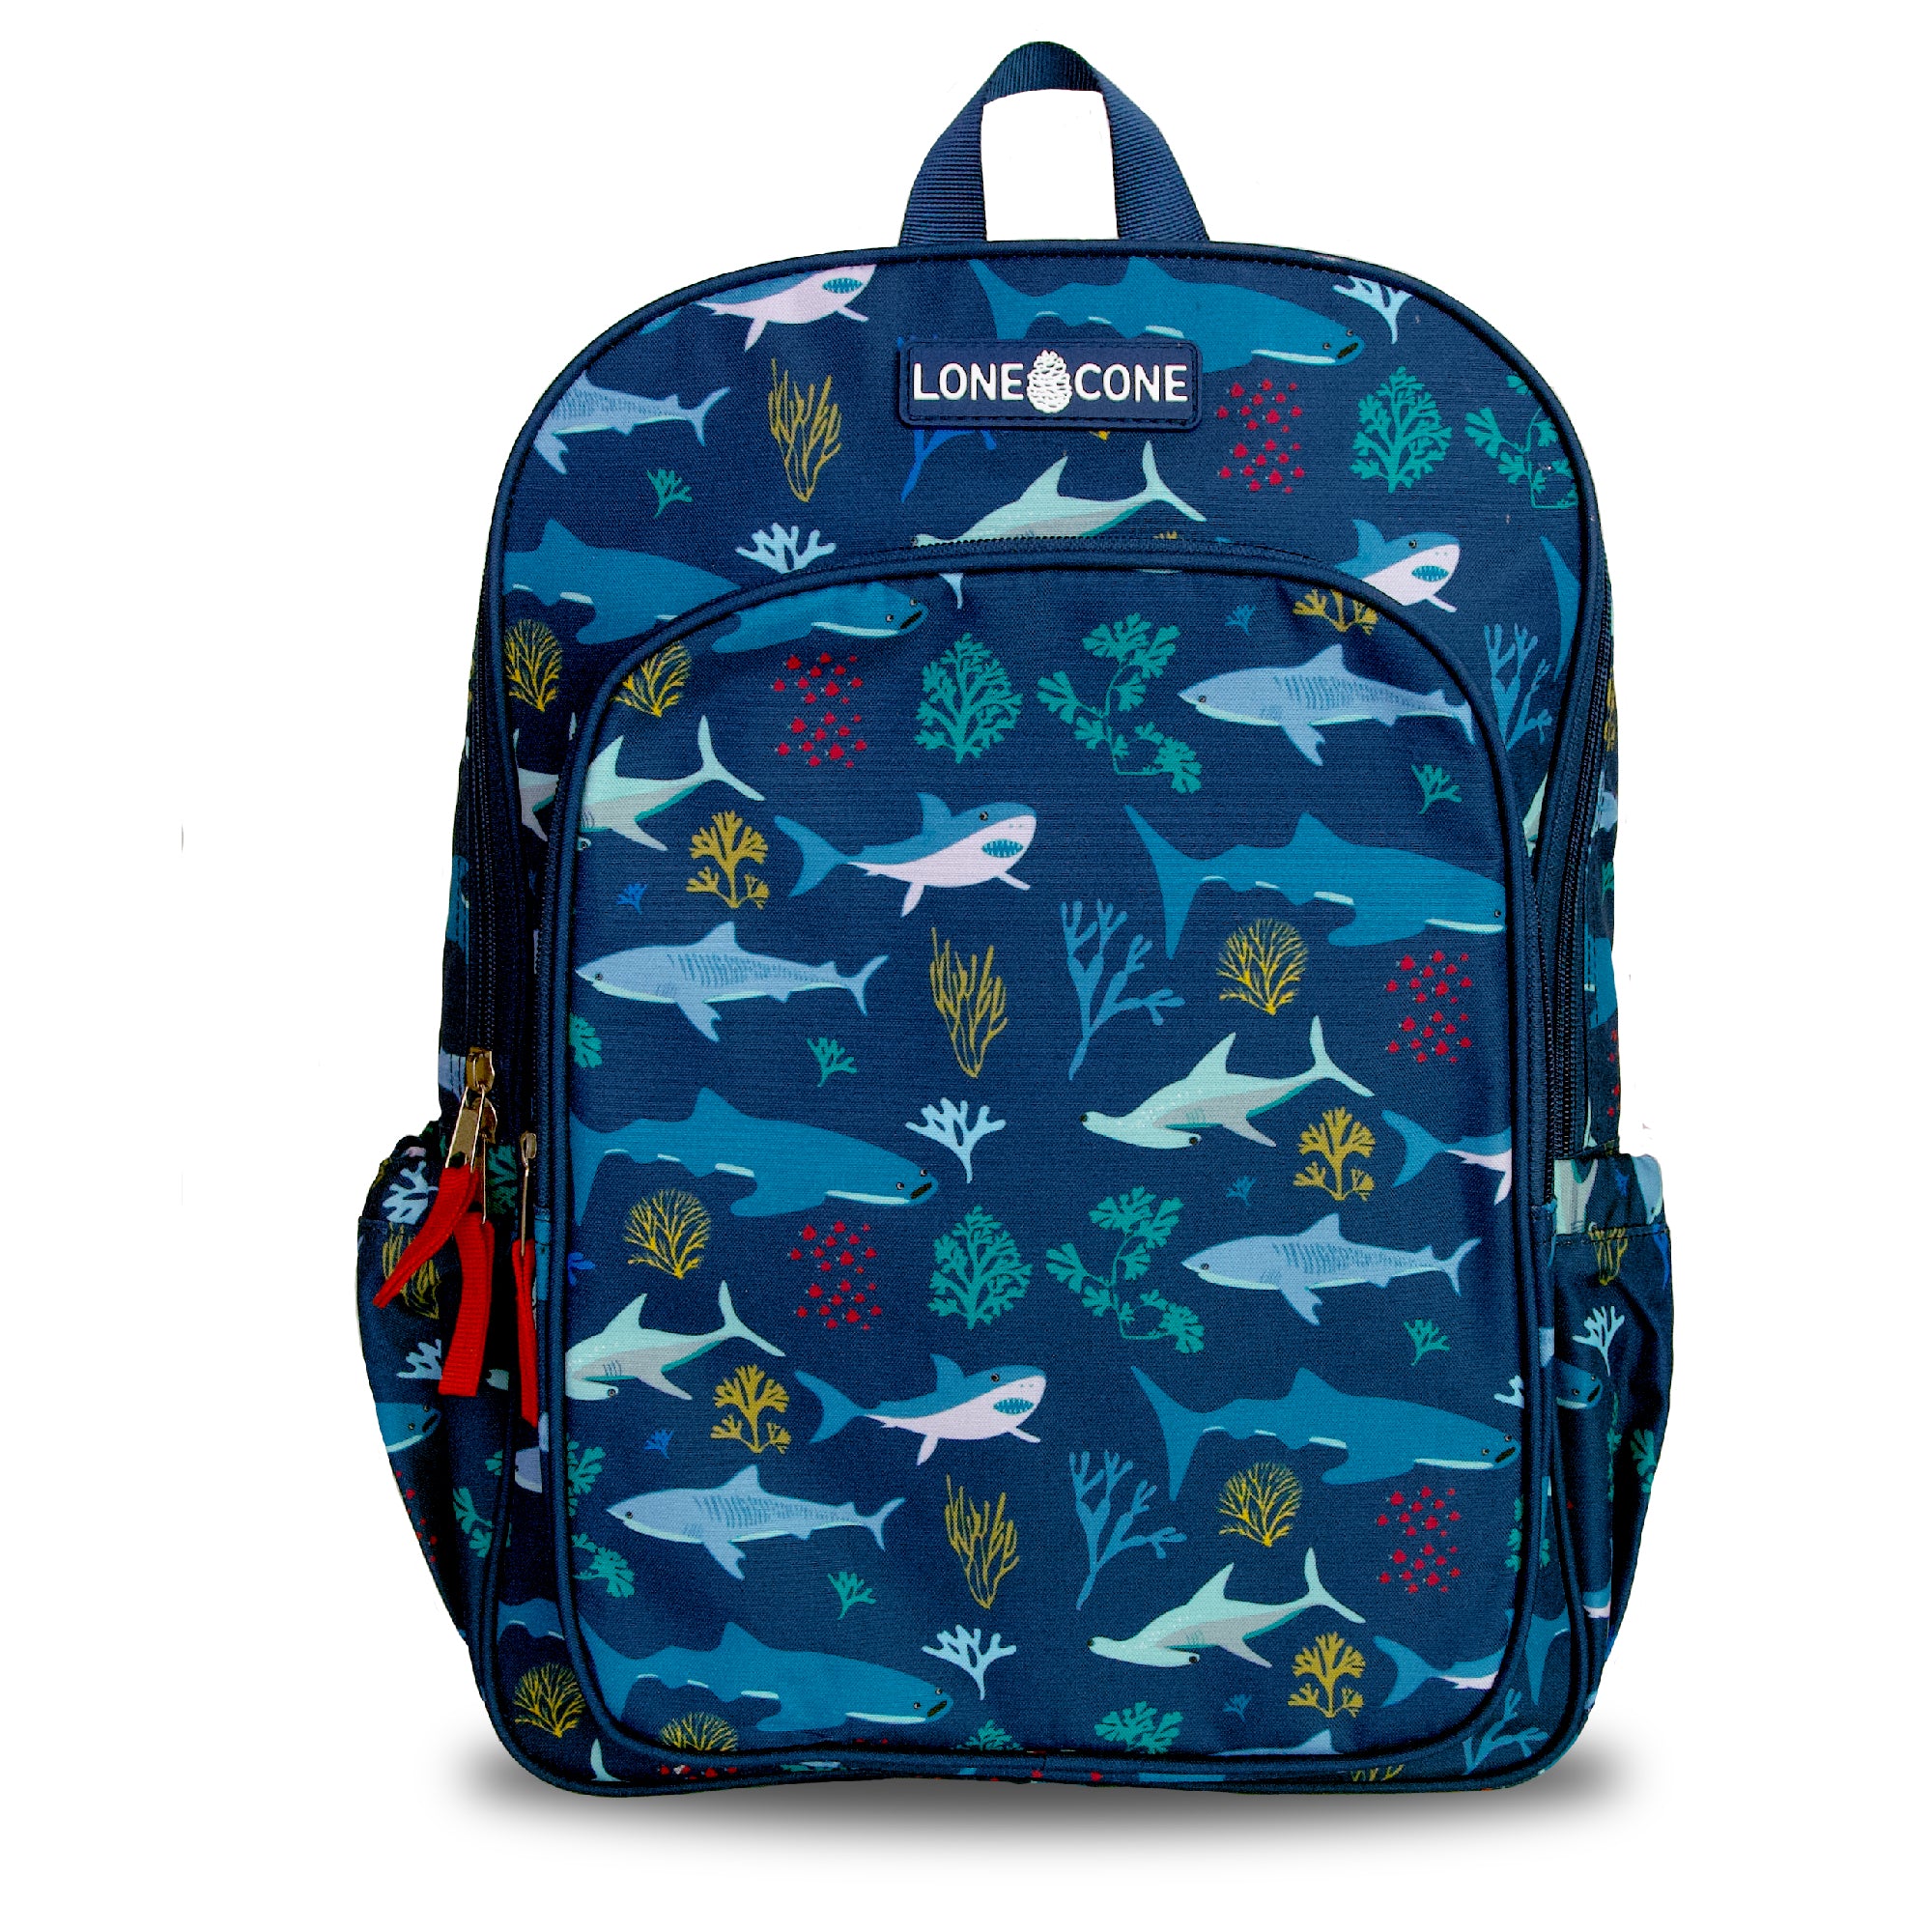 15 Fin-Tastic Shark Backpack